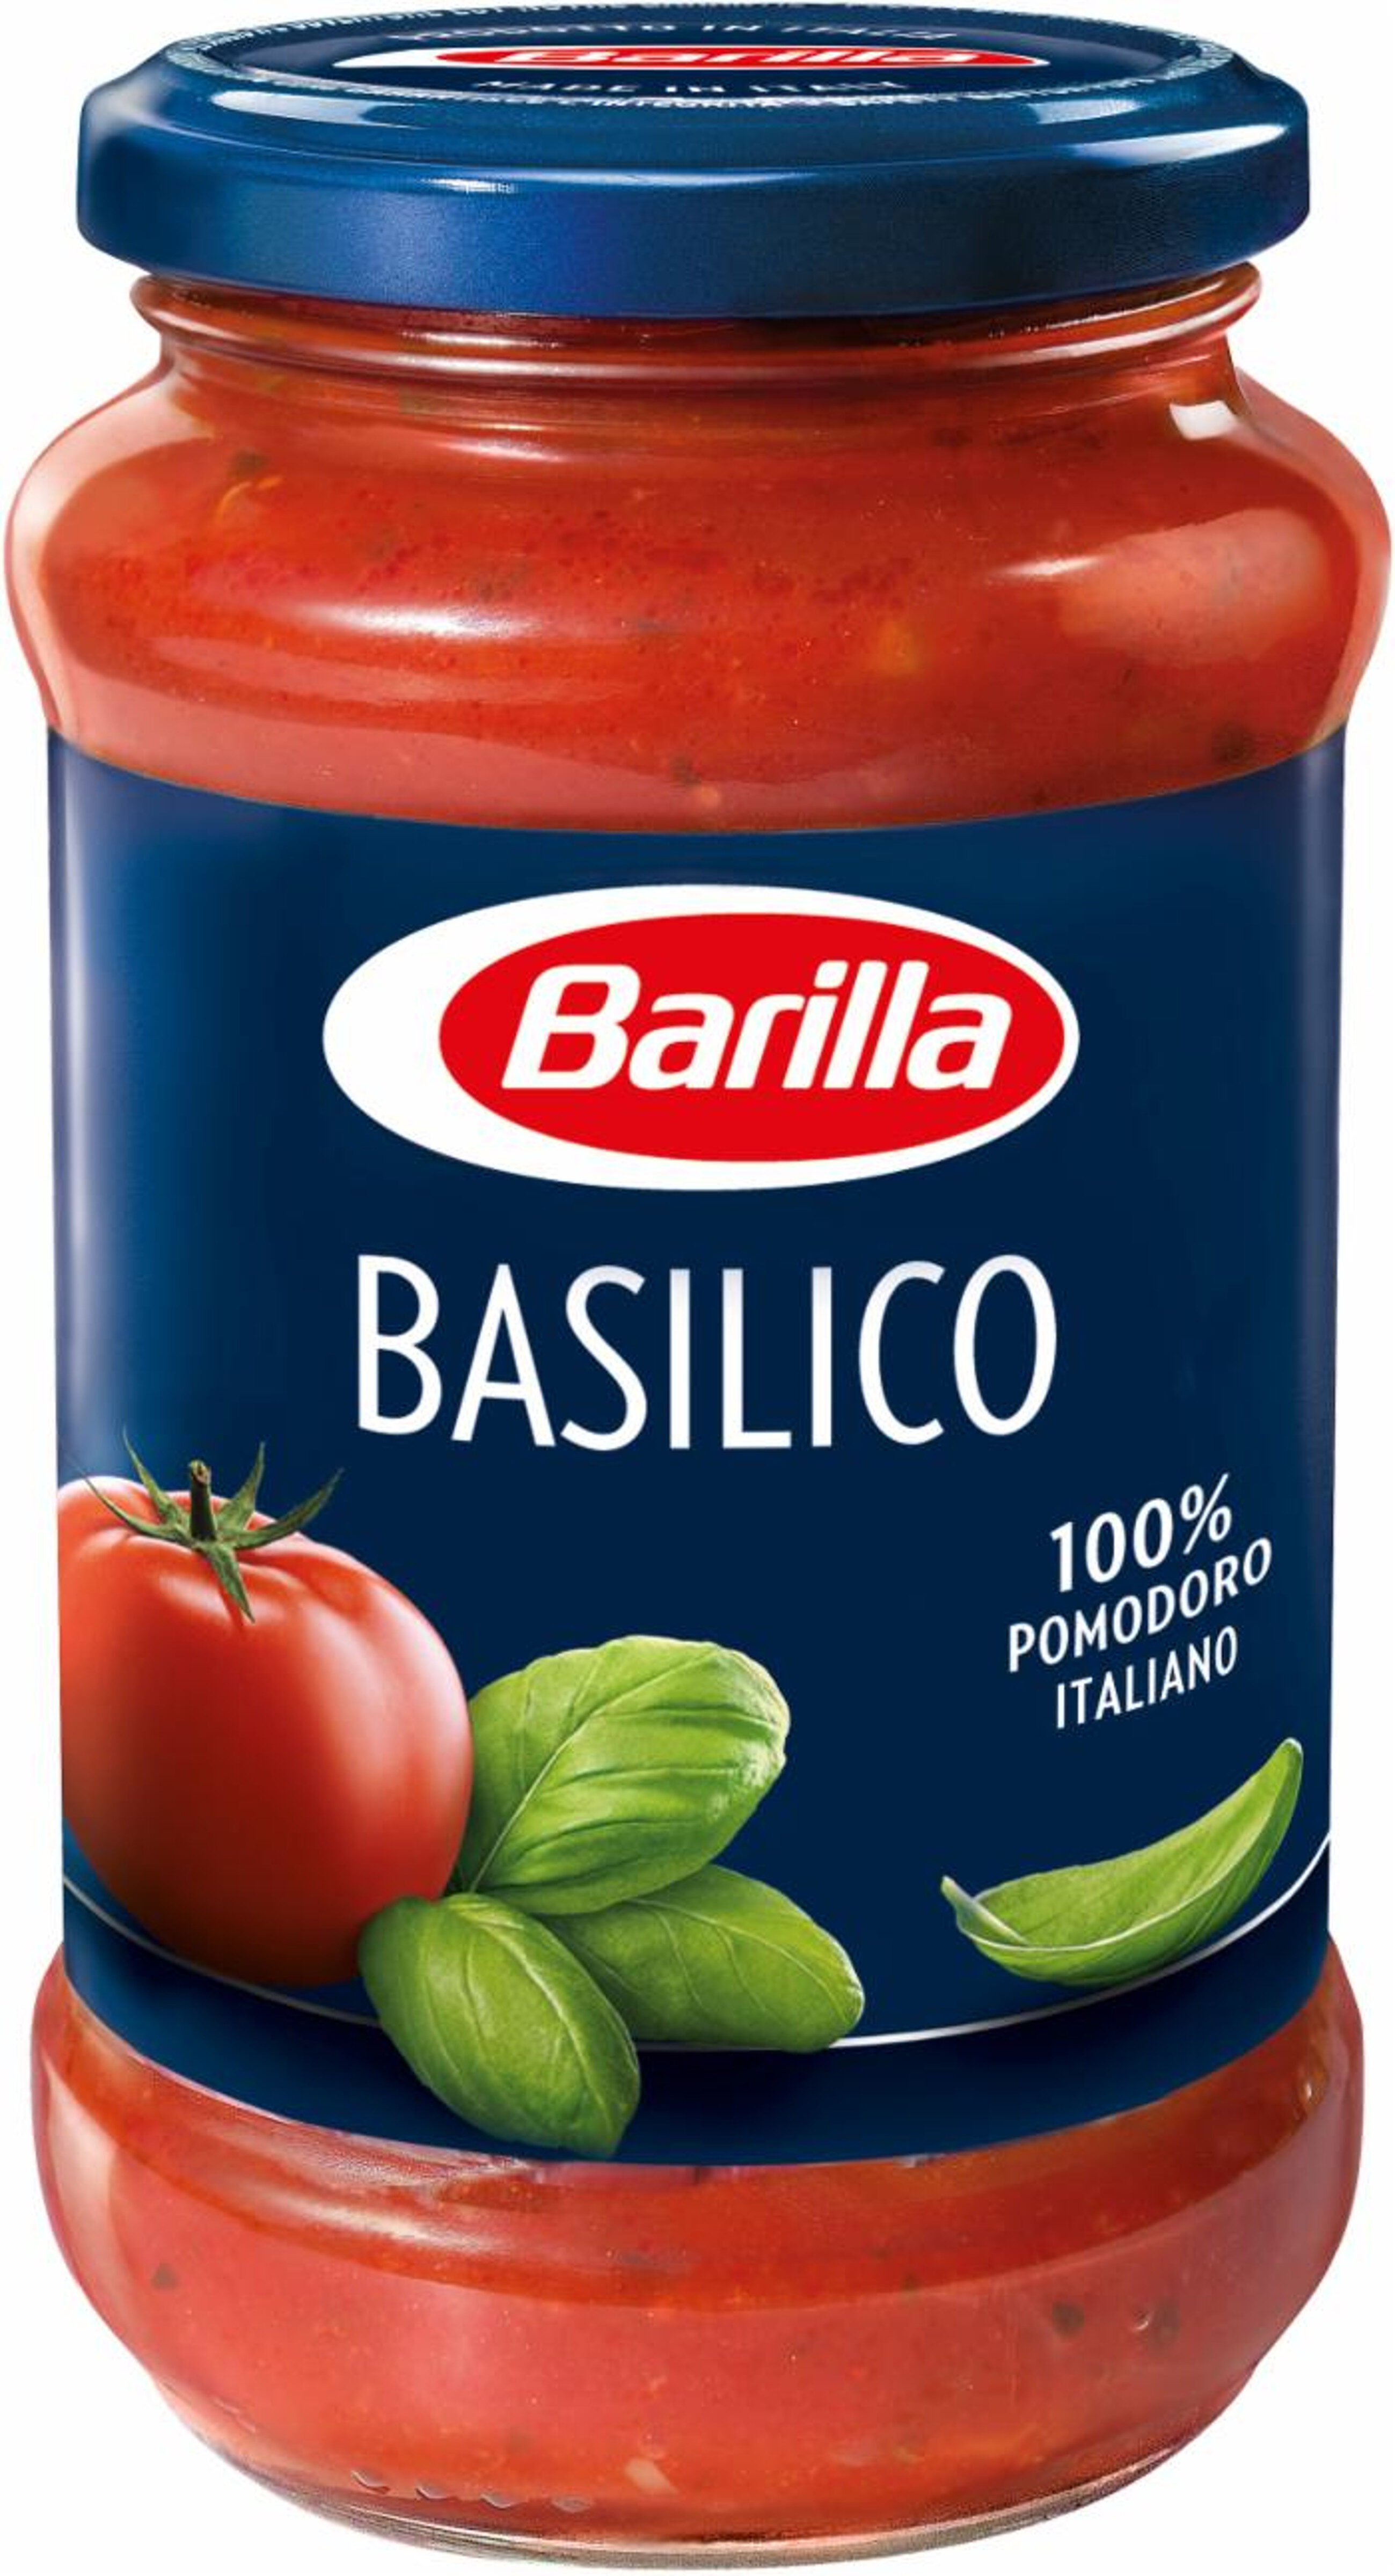 Barilla sauce tomates basilic 400g - Producto